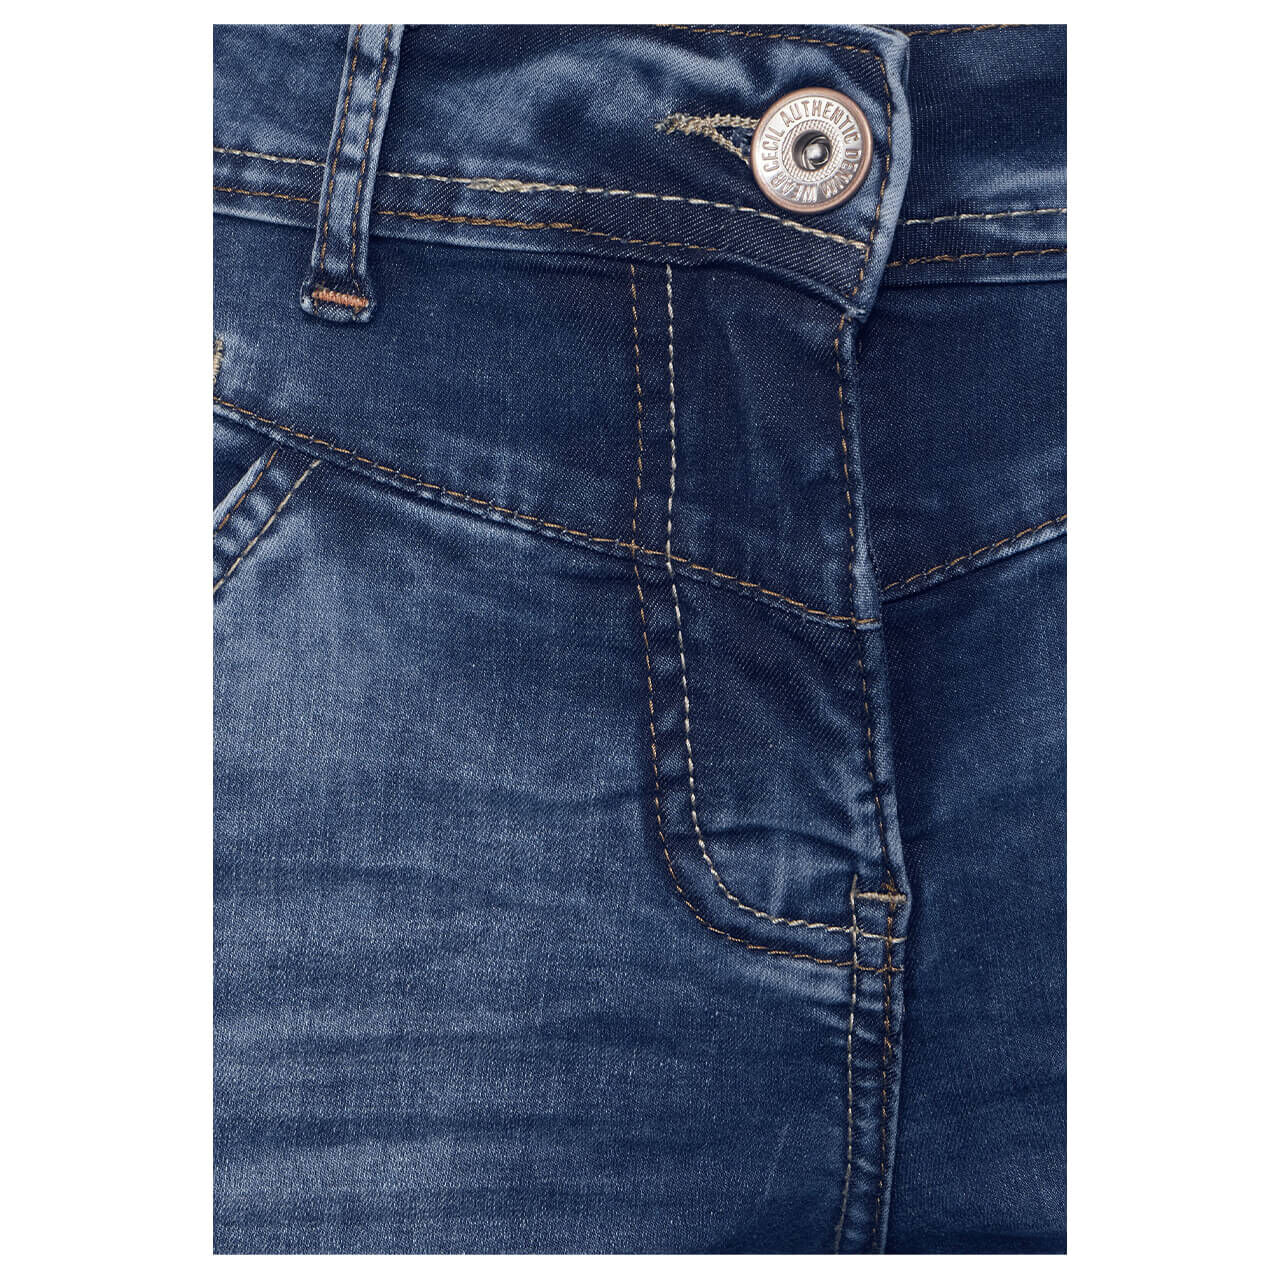 Cecil Scarlett 7/8 Jeans für Damen in Mittelblau verwaschen, FarbNr.: 10240